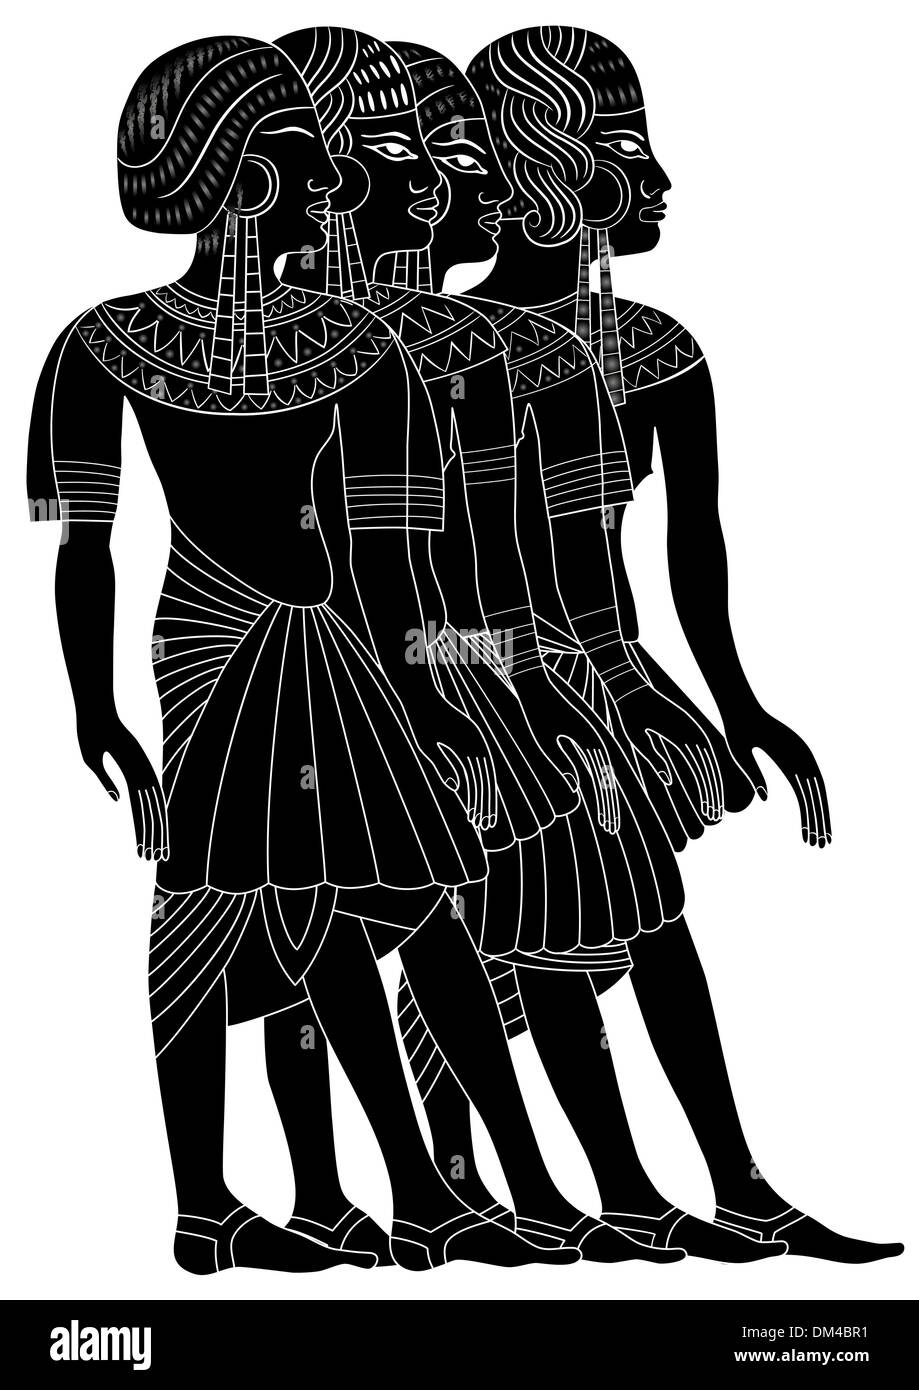 Vektor - Frauen des alten Ägypten Stock Vektor